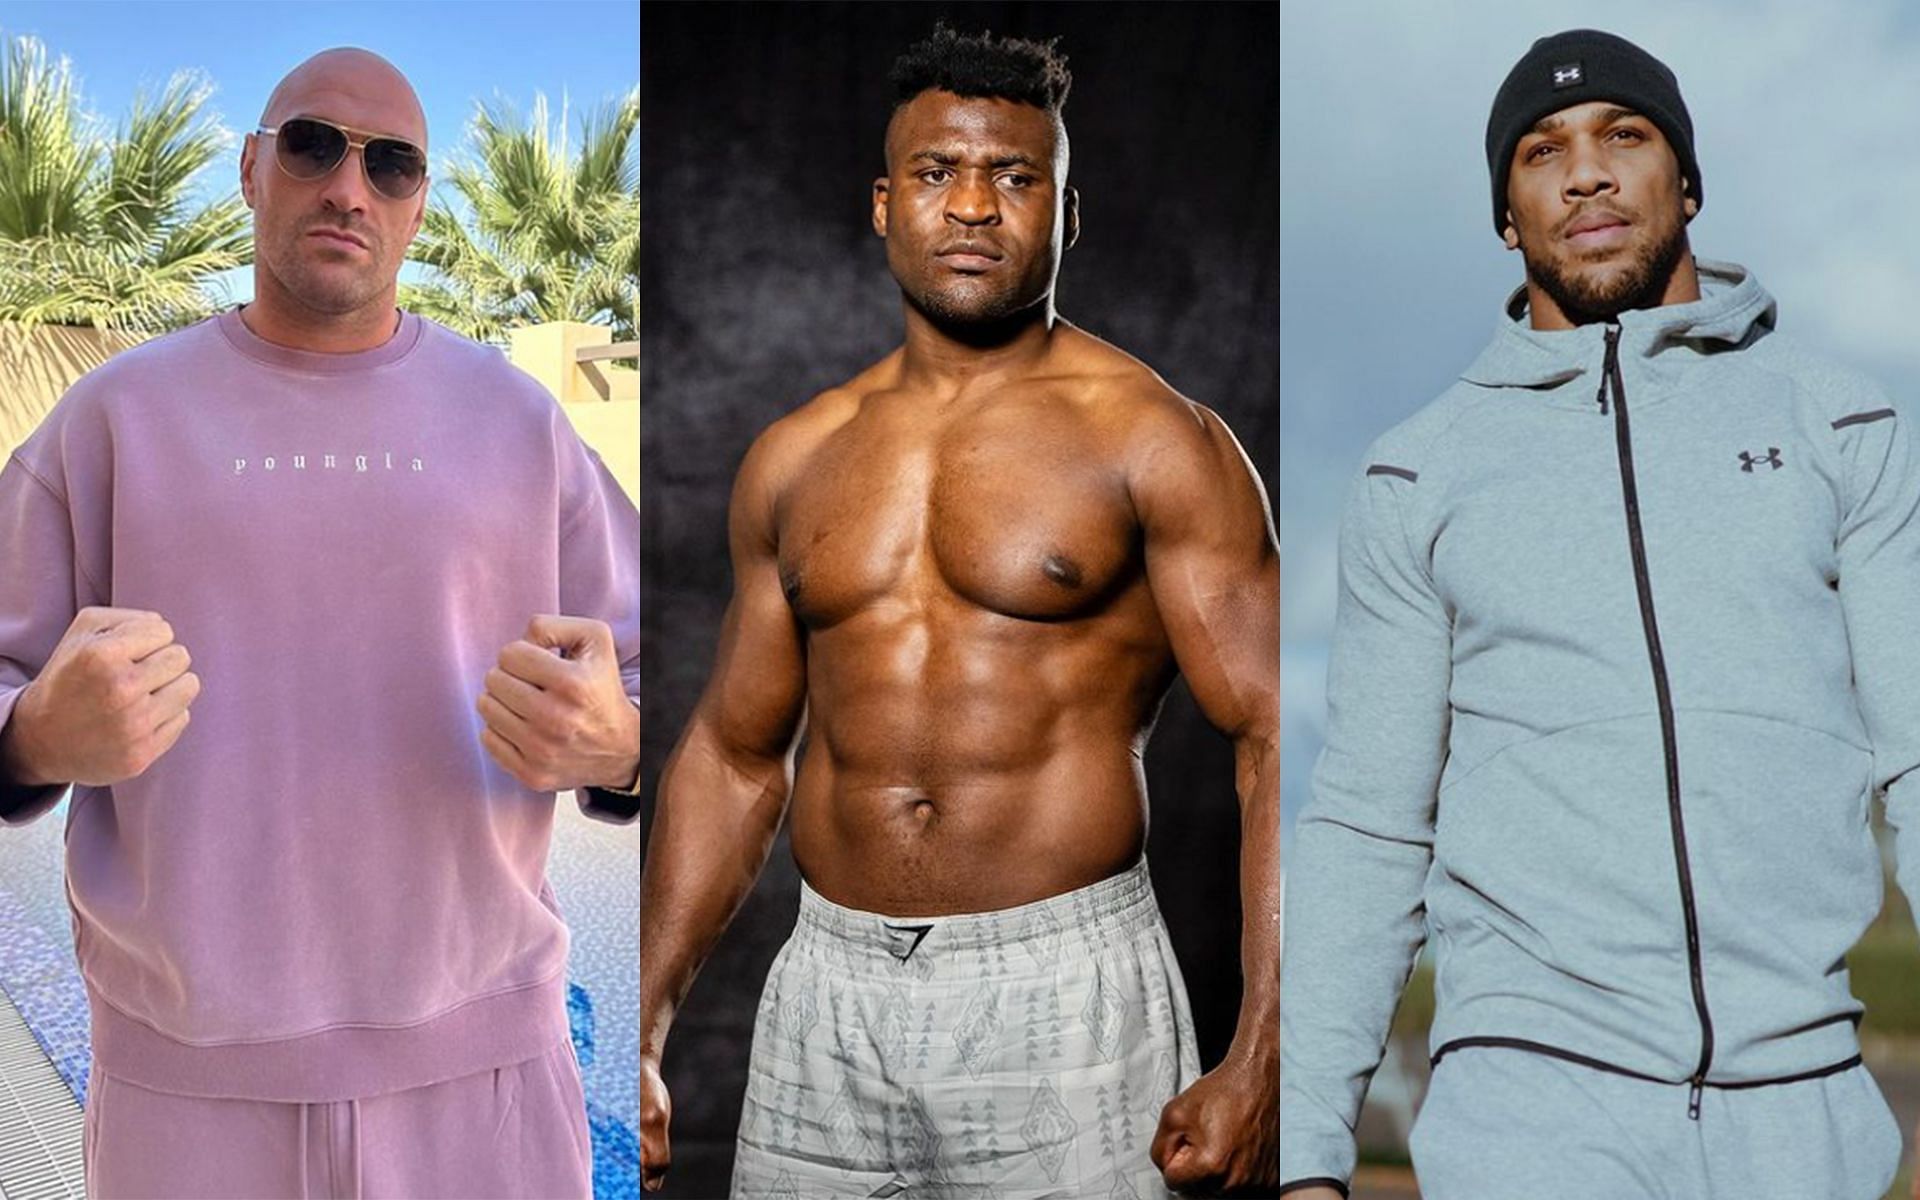 Francis Ngannou (center) looks primed to take on elite boxers like Tyson Fury (left) and Anthony Joshua (right) [Images Courtesy: @tysonfury, @anthonyjoshua and @francisngannou Instagram]